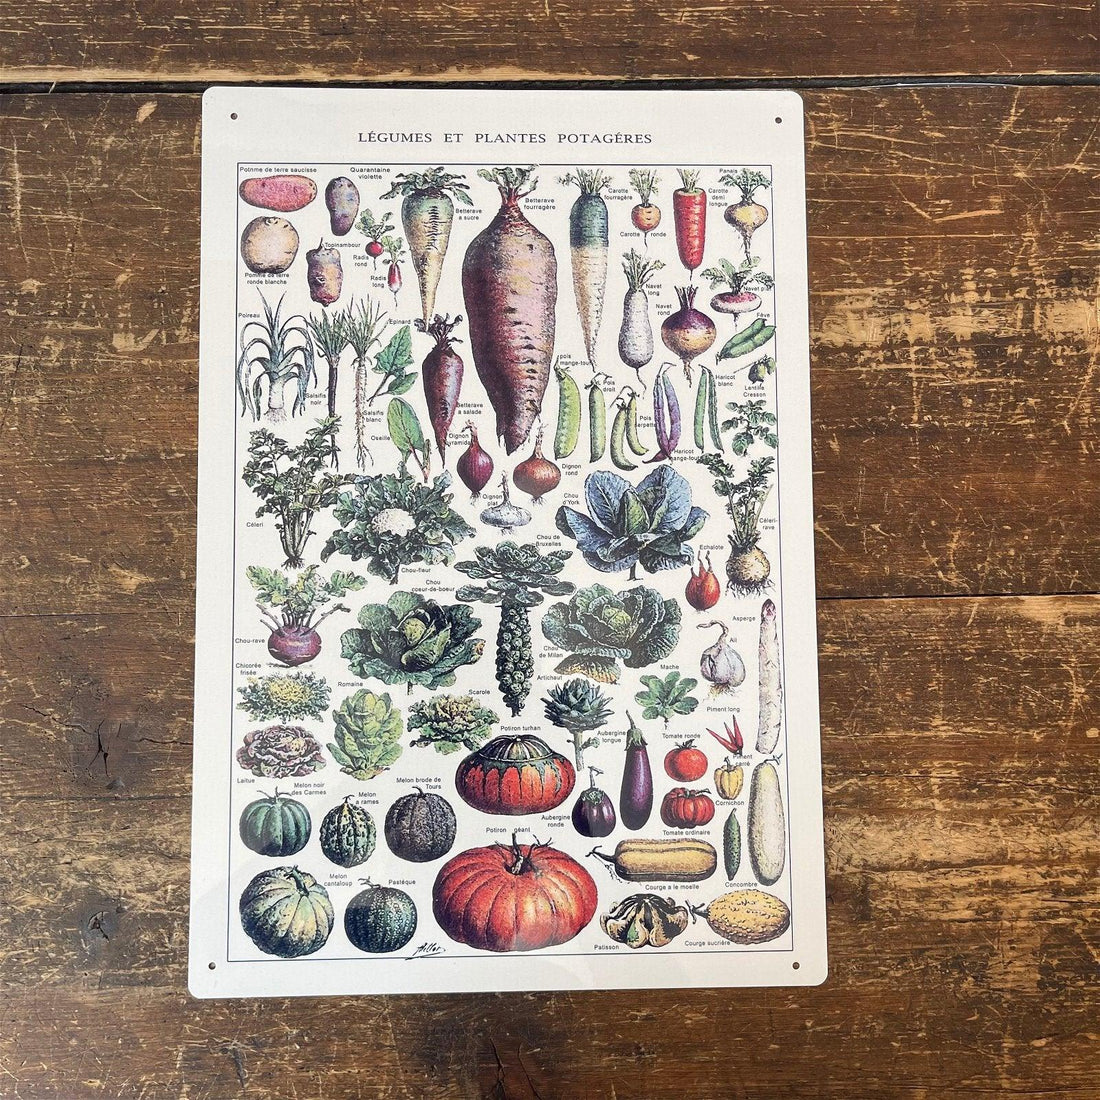 Vintage Metal Sign - Vintage Botanical Kitchen Vegetables Sign - £27.99 - Signs & Rules 